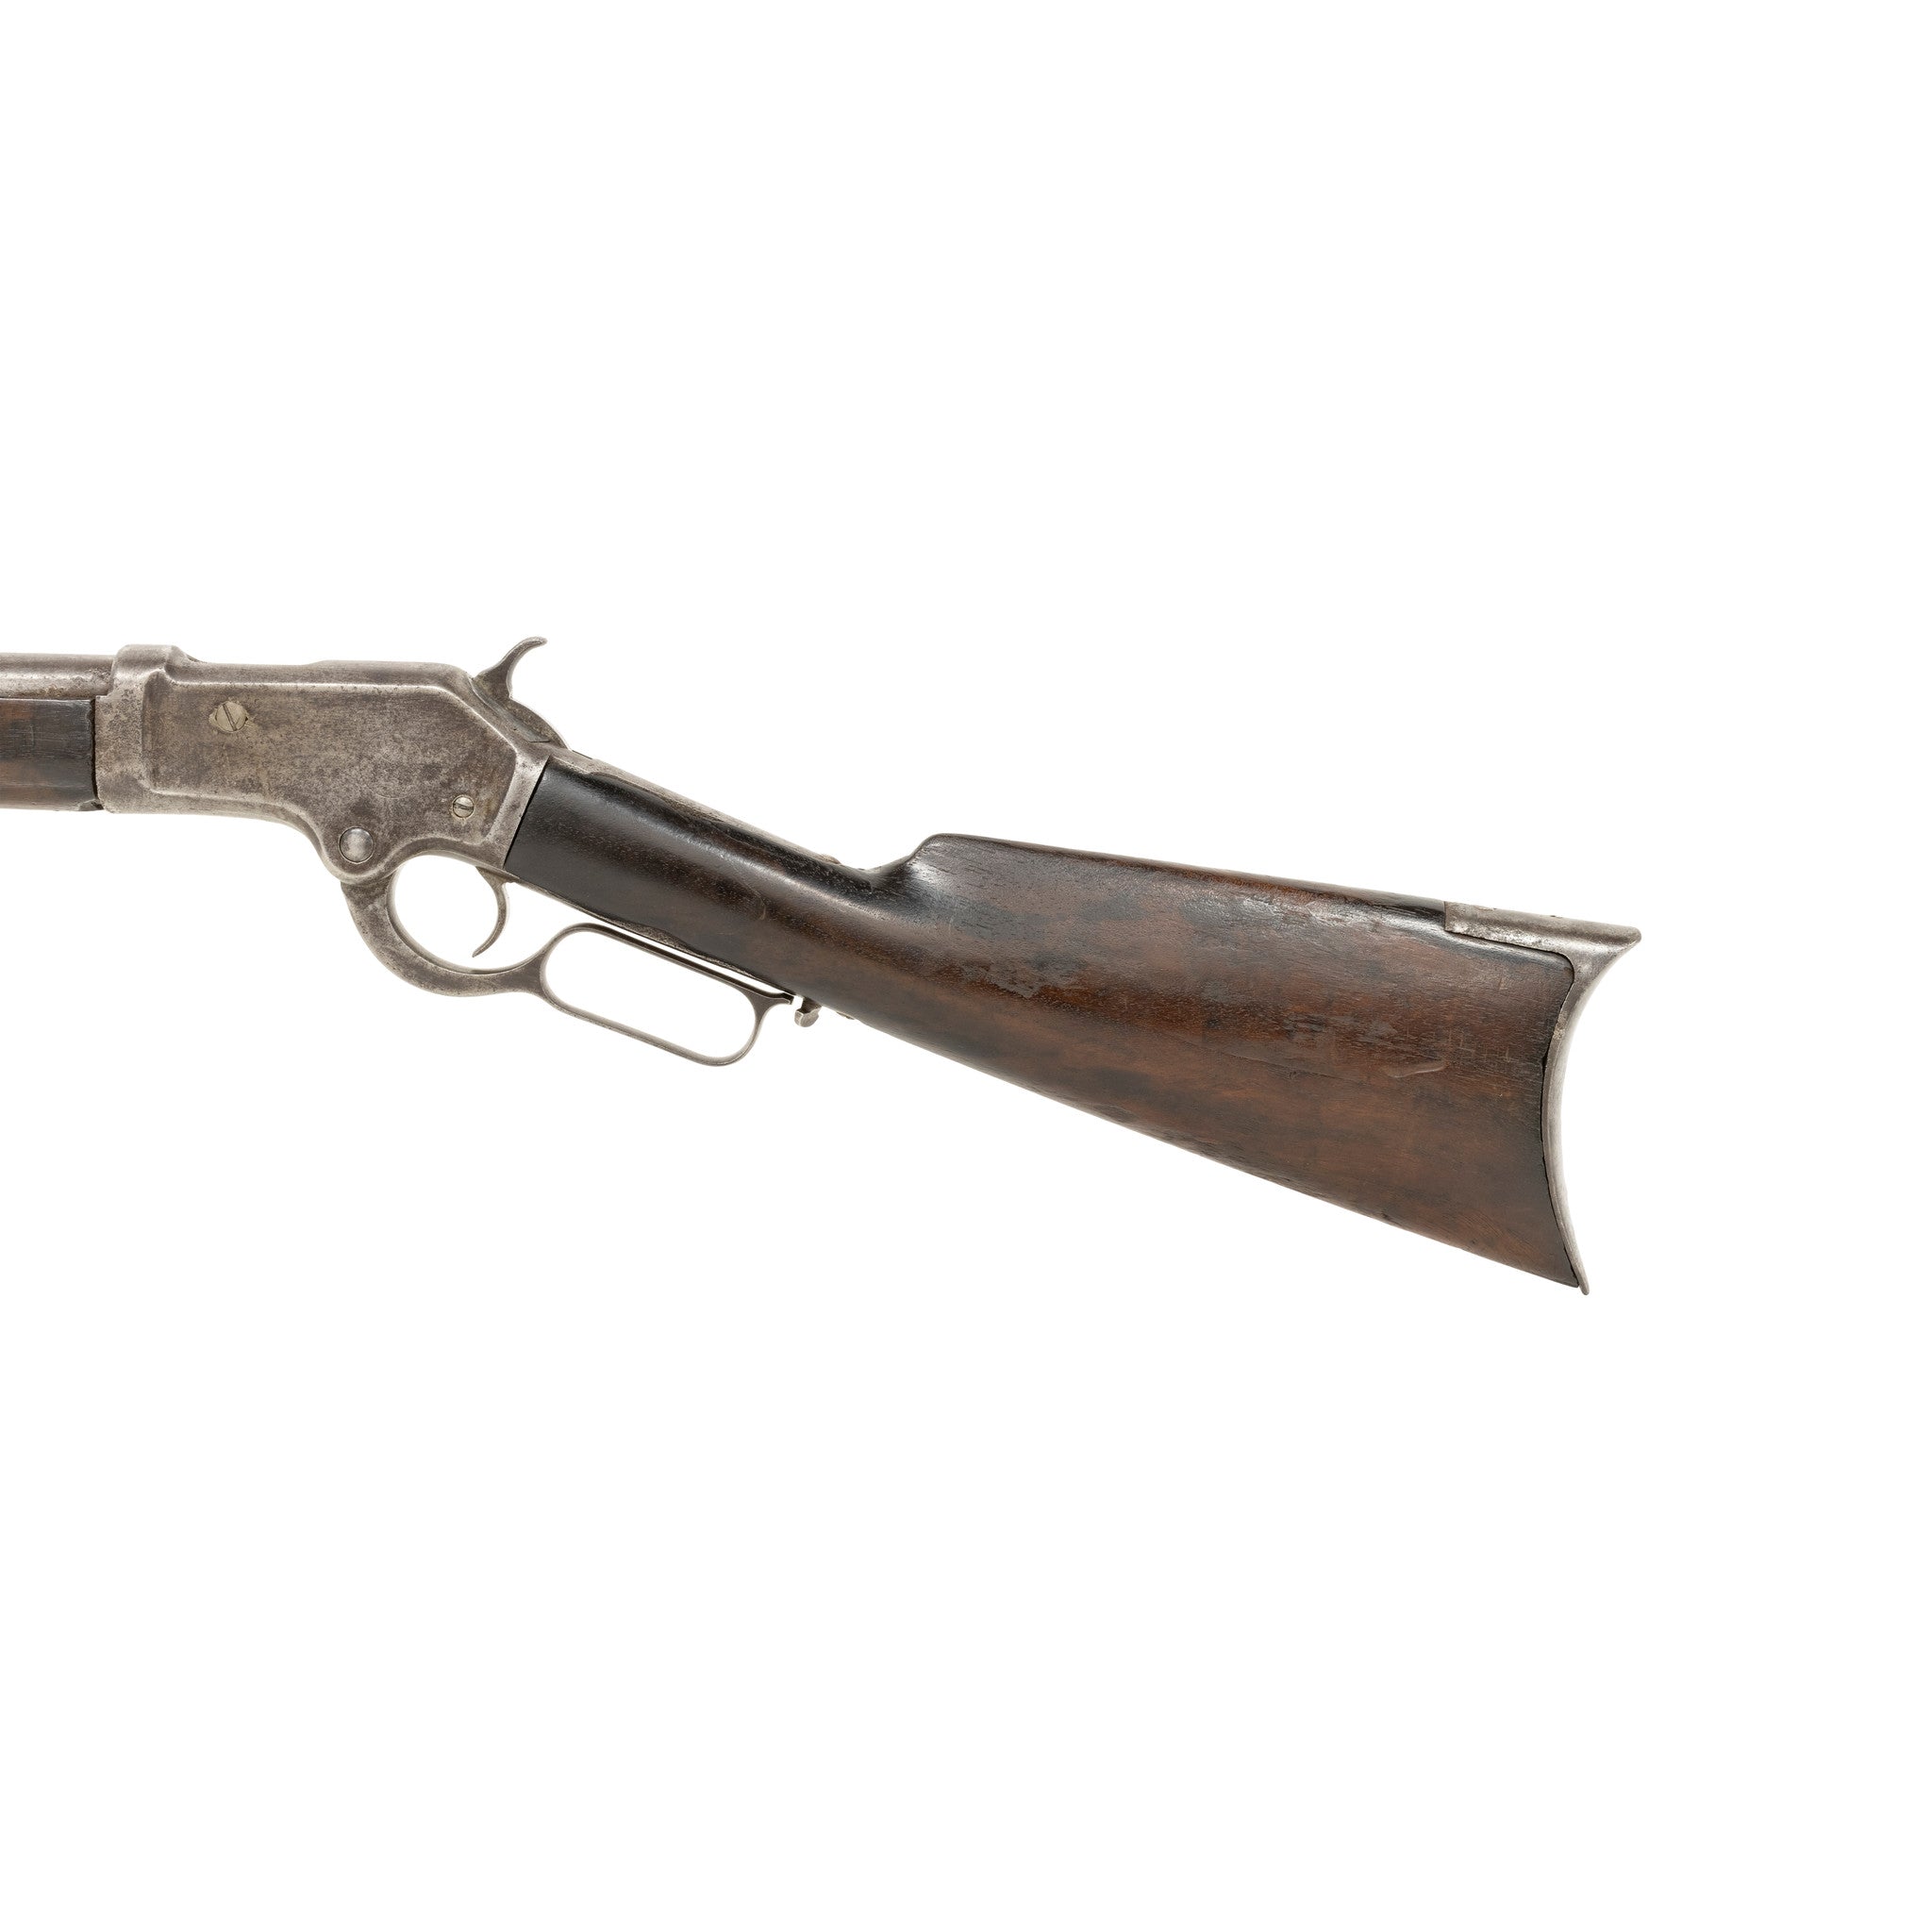 Colt Burgess Lever Action Rifle